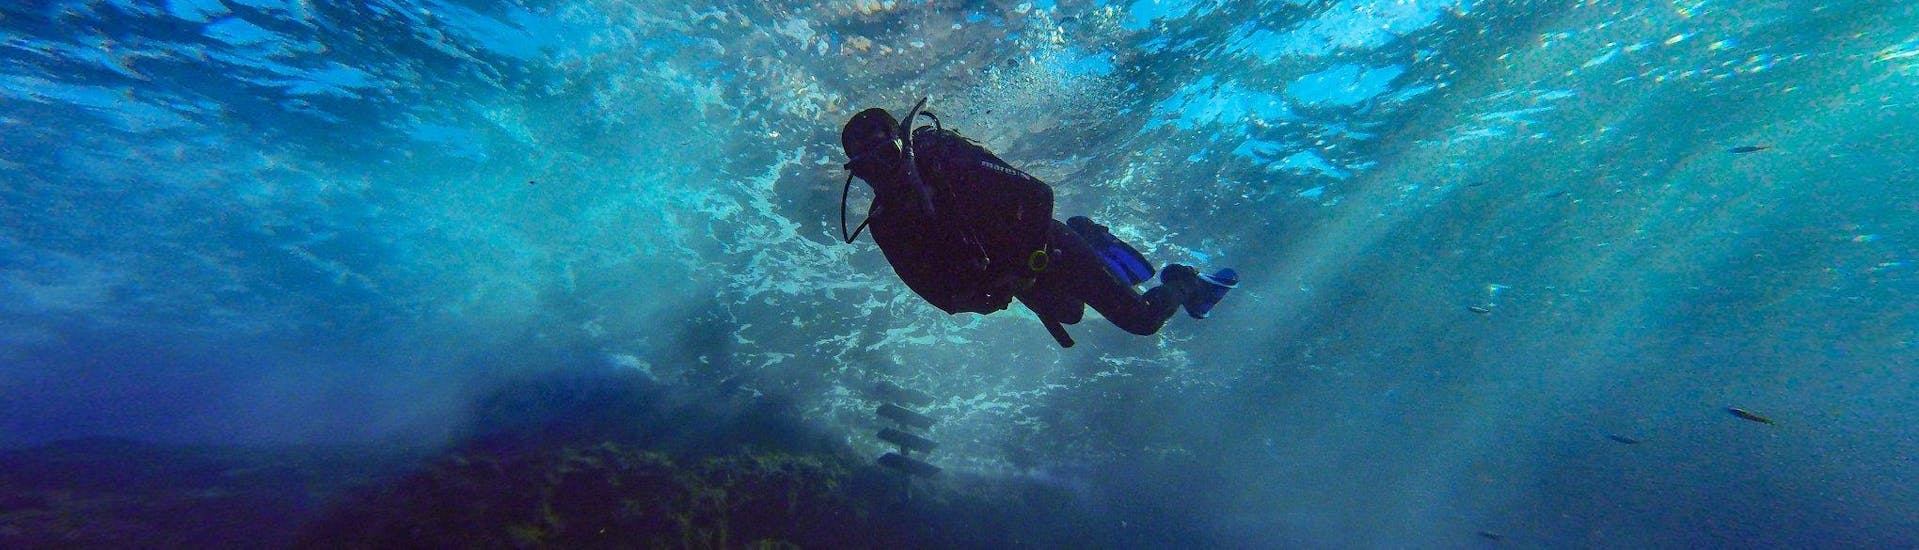 PADI Open Water-Diver-Kurs für Anfänger in Bugibba, Malta.